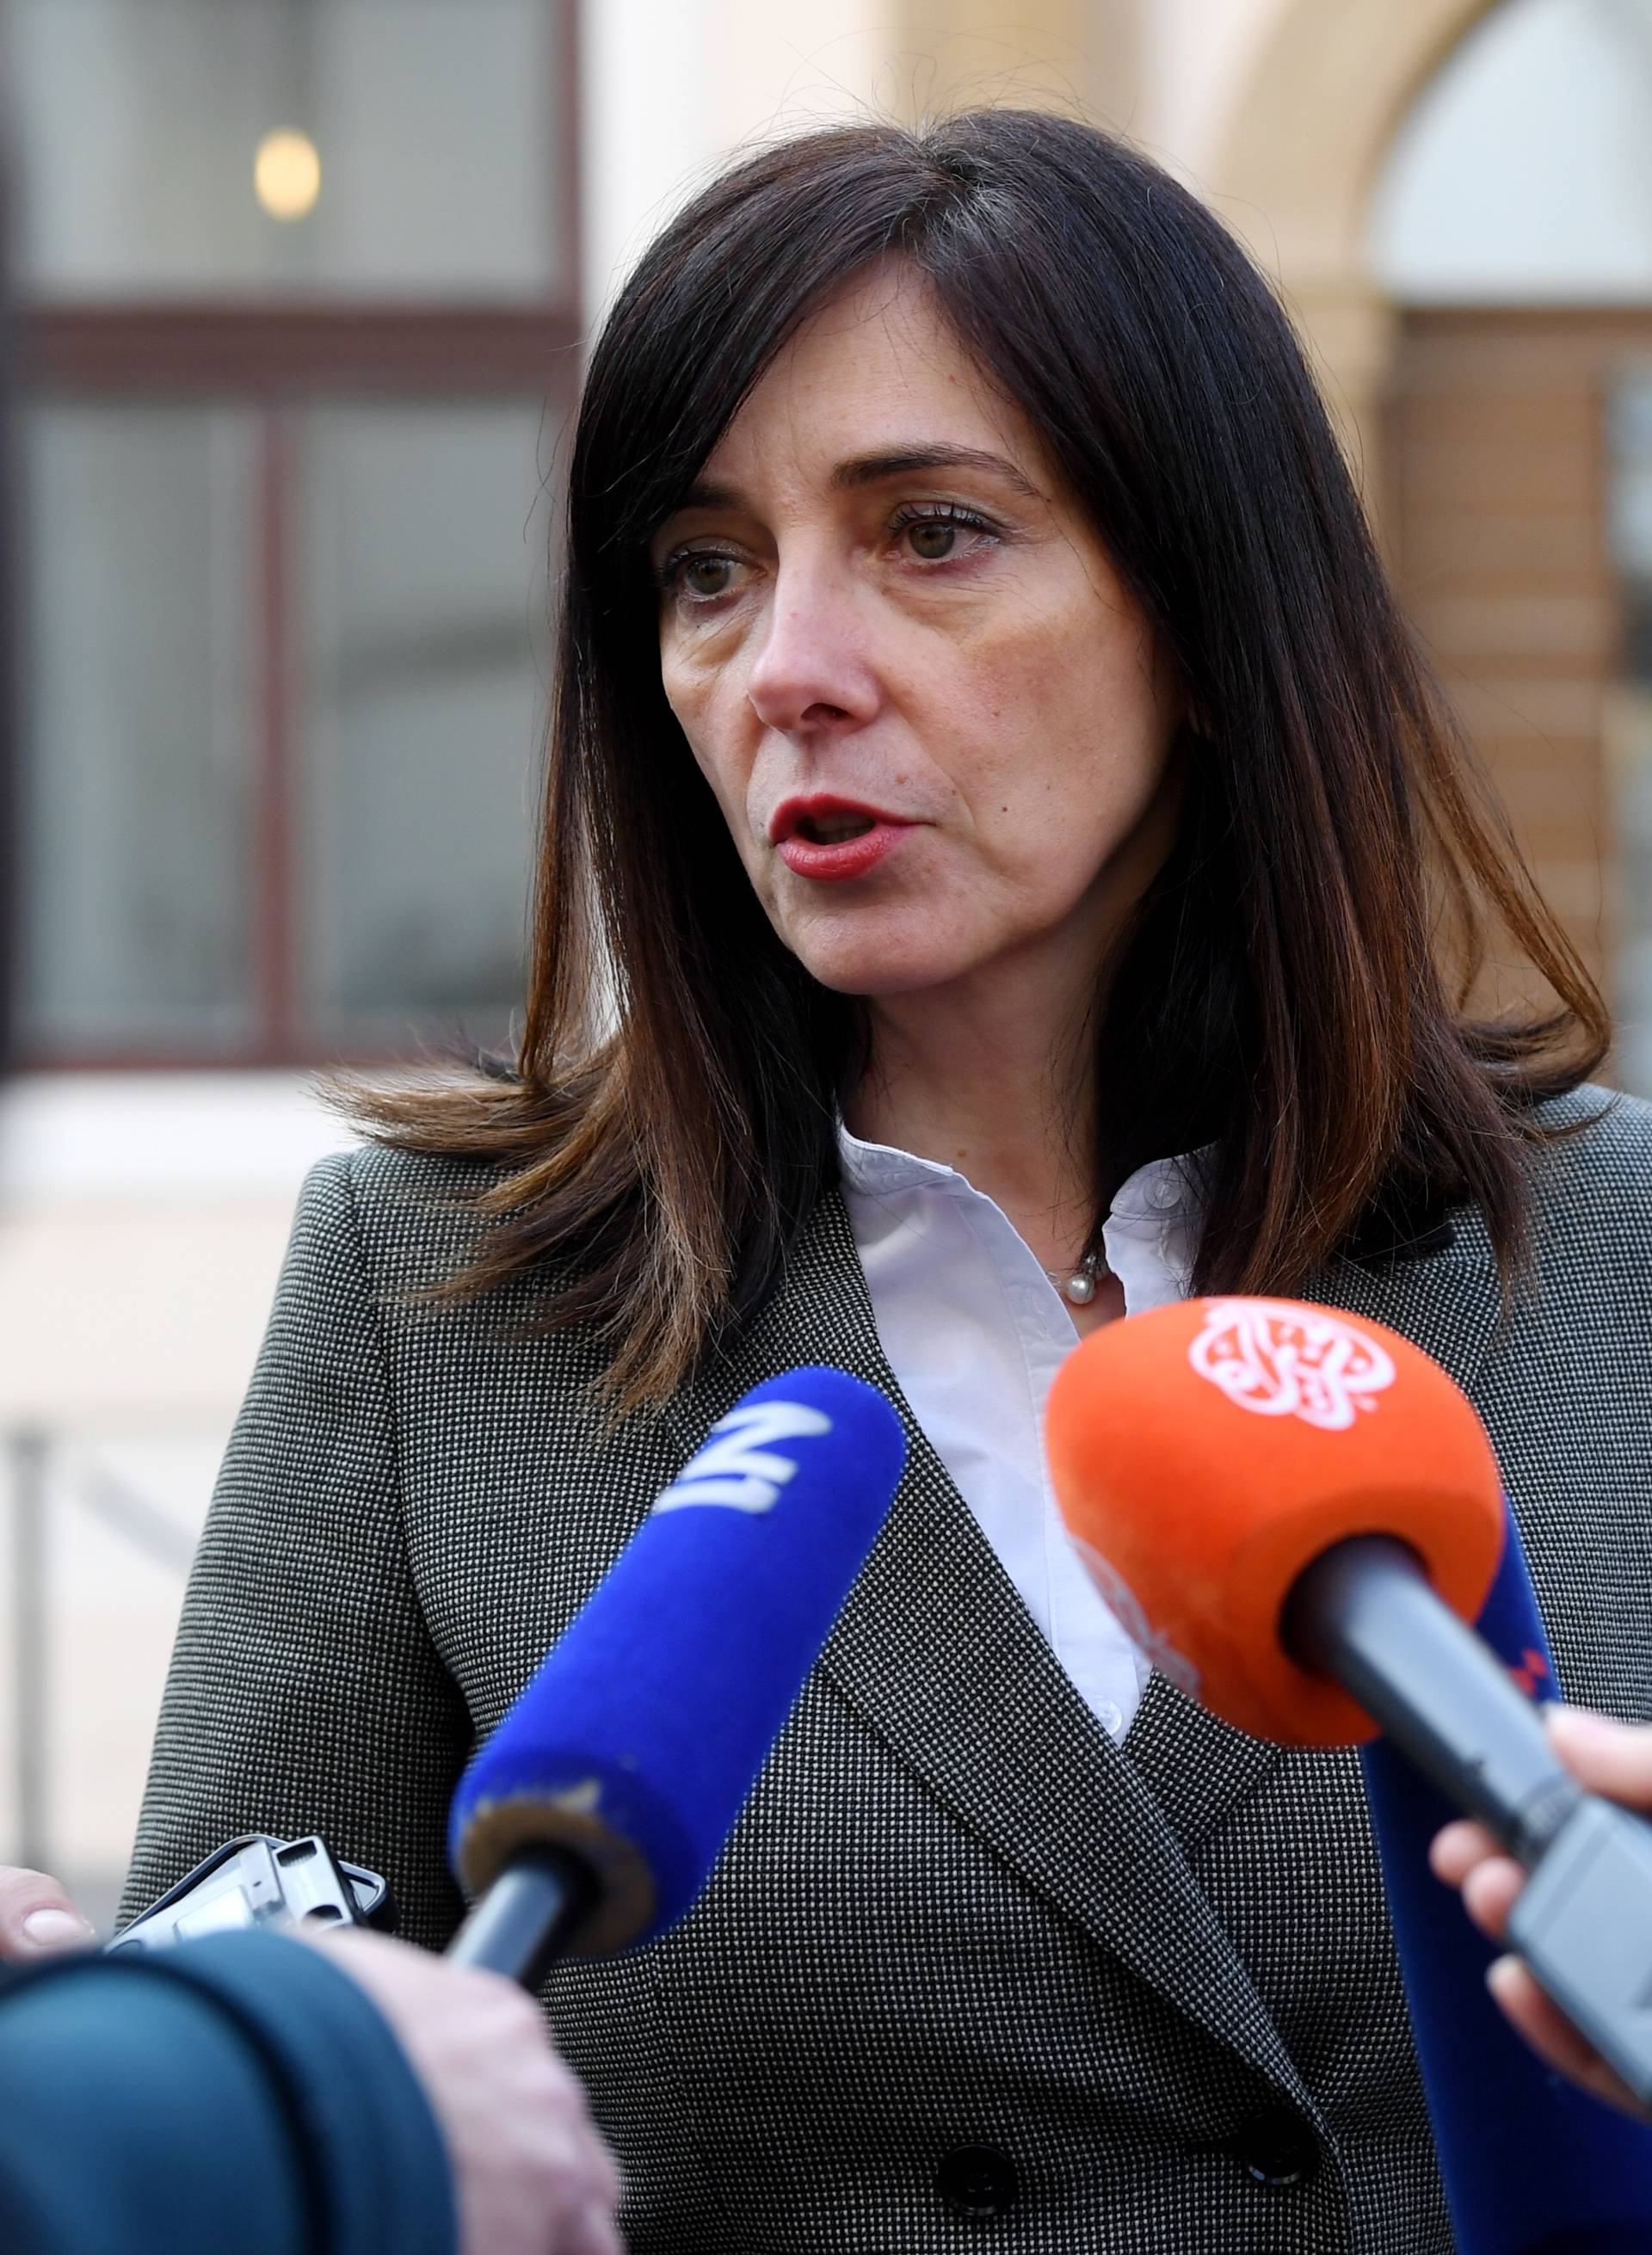 Ministrica Divjak: 'Od politike ne živim niti sam ikad živjela'